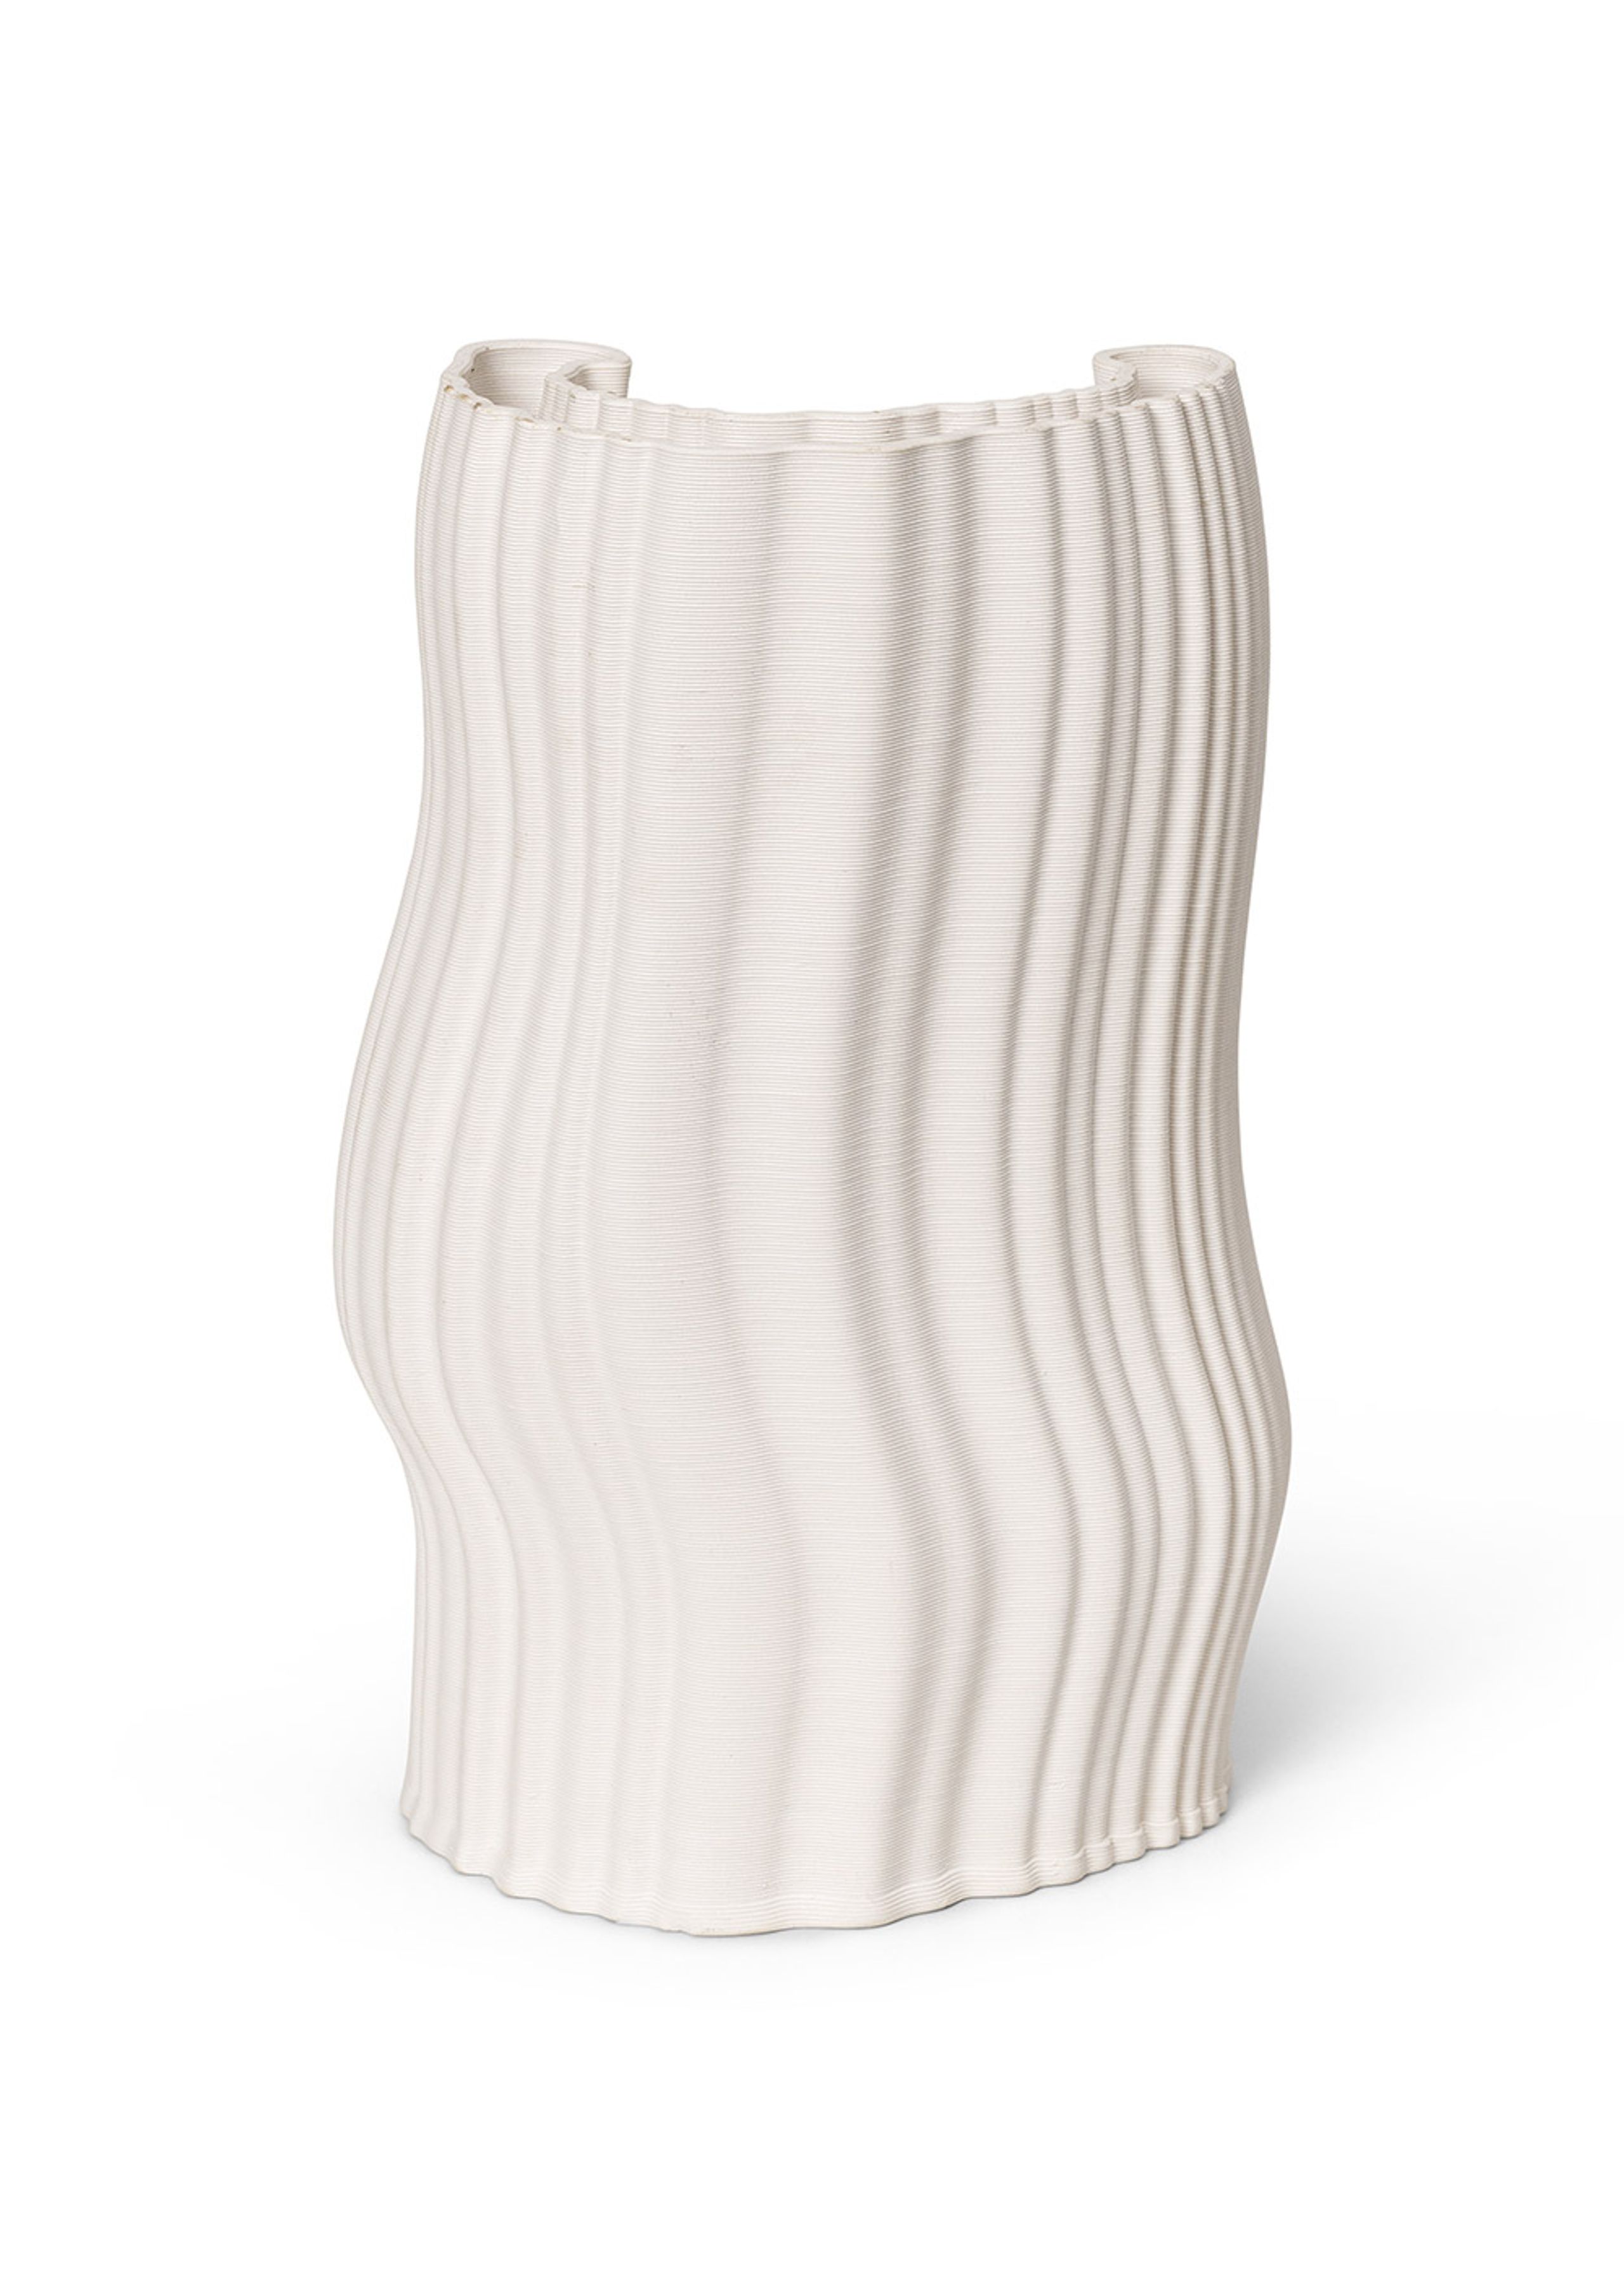 Ferm Living - Vase - Moire Vase - Offwhite